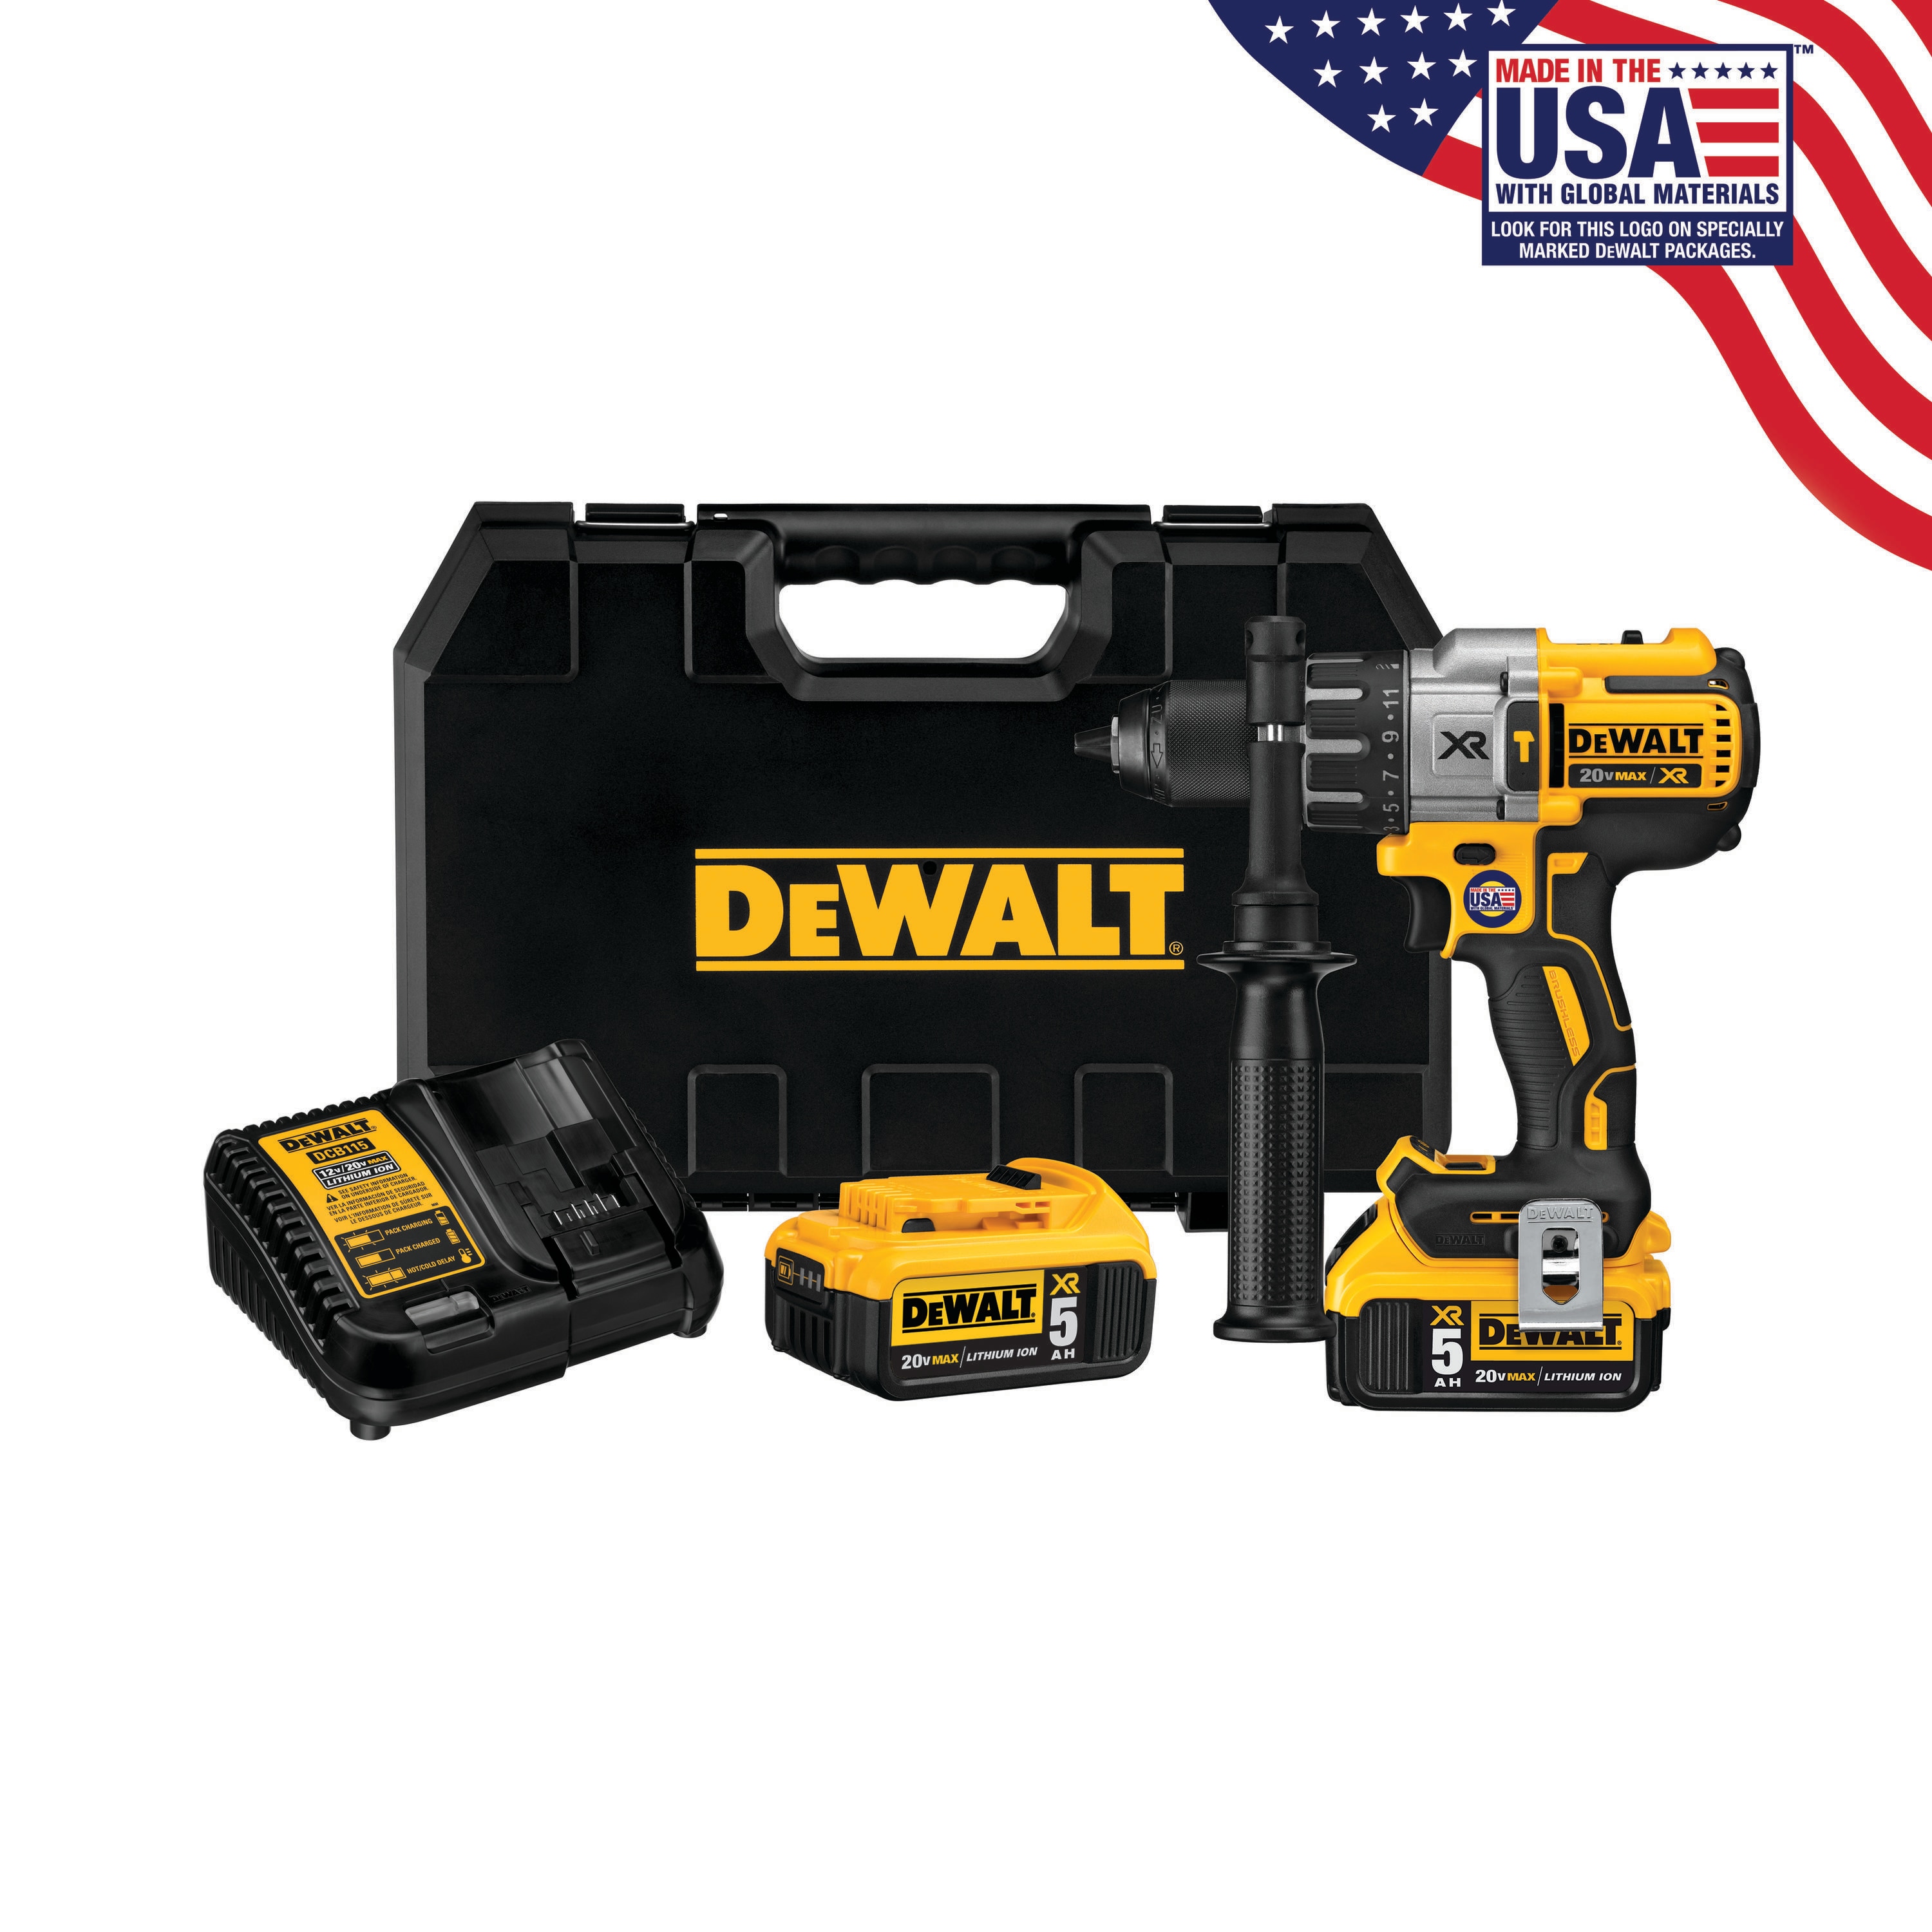 DEWALT 20V MAX XR Hammer Drill Kit, Brushless, 3-Speed, Cordless (DCD996P2) - 4